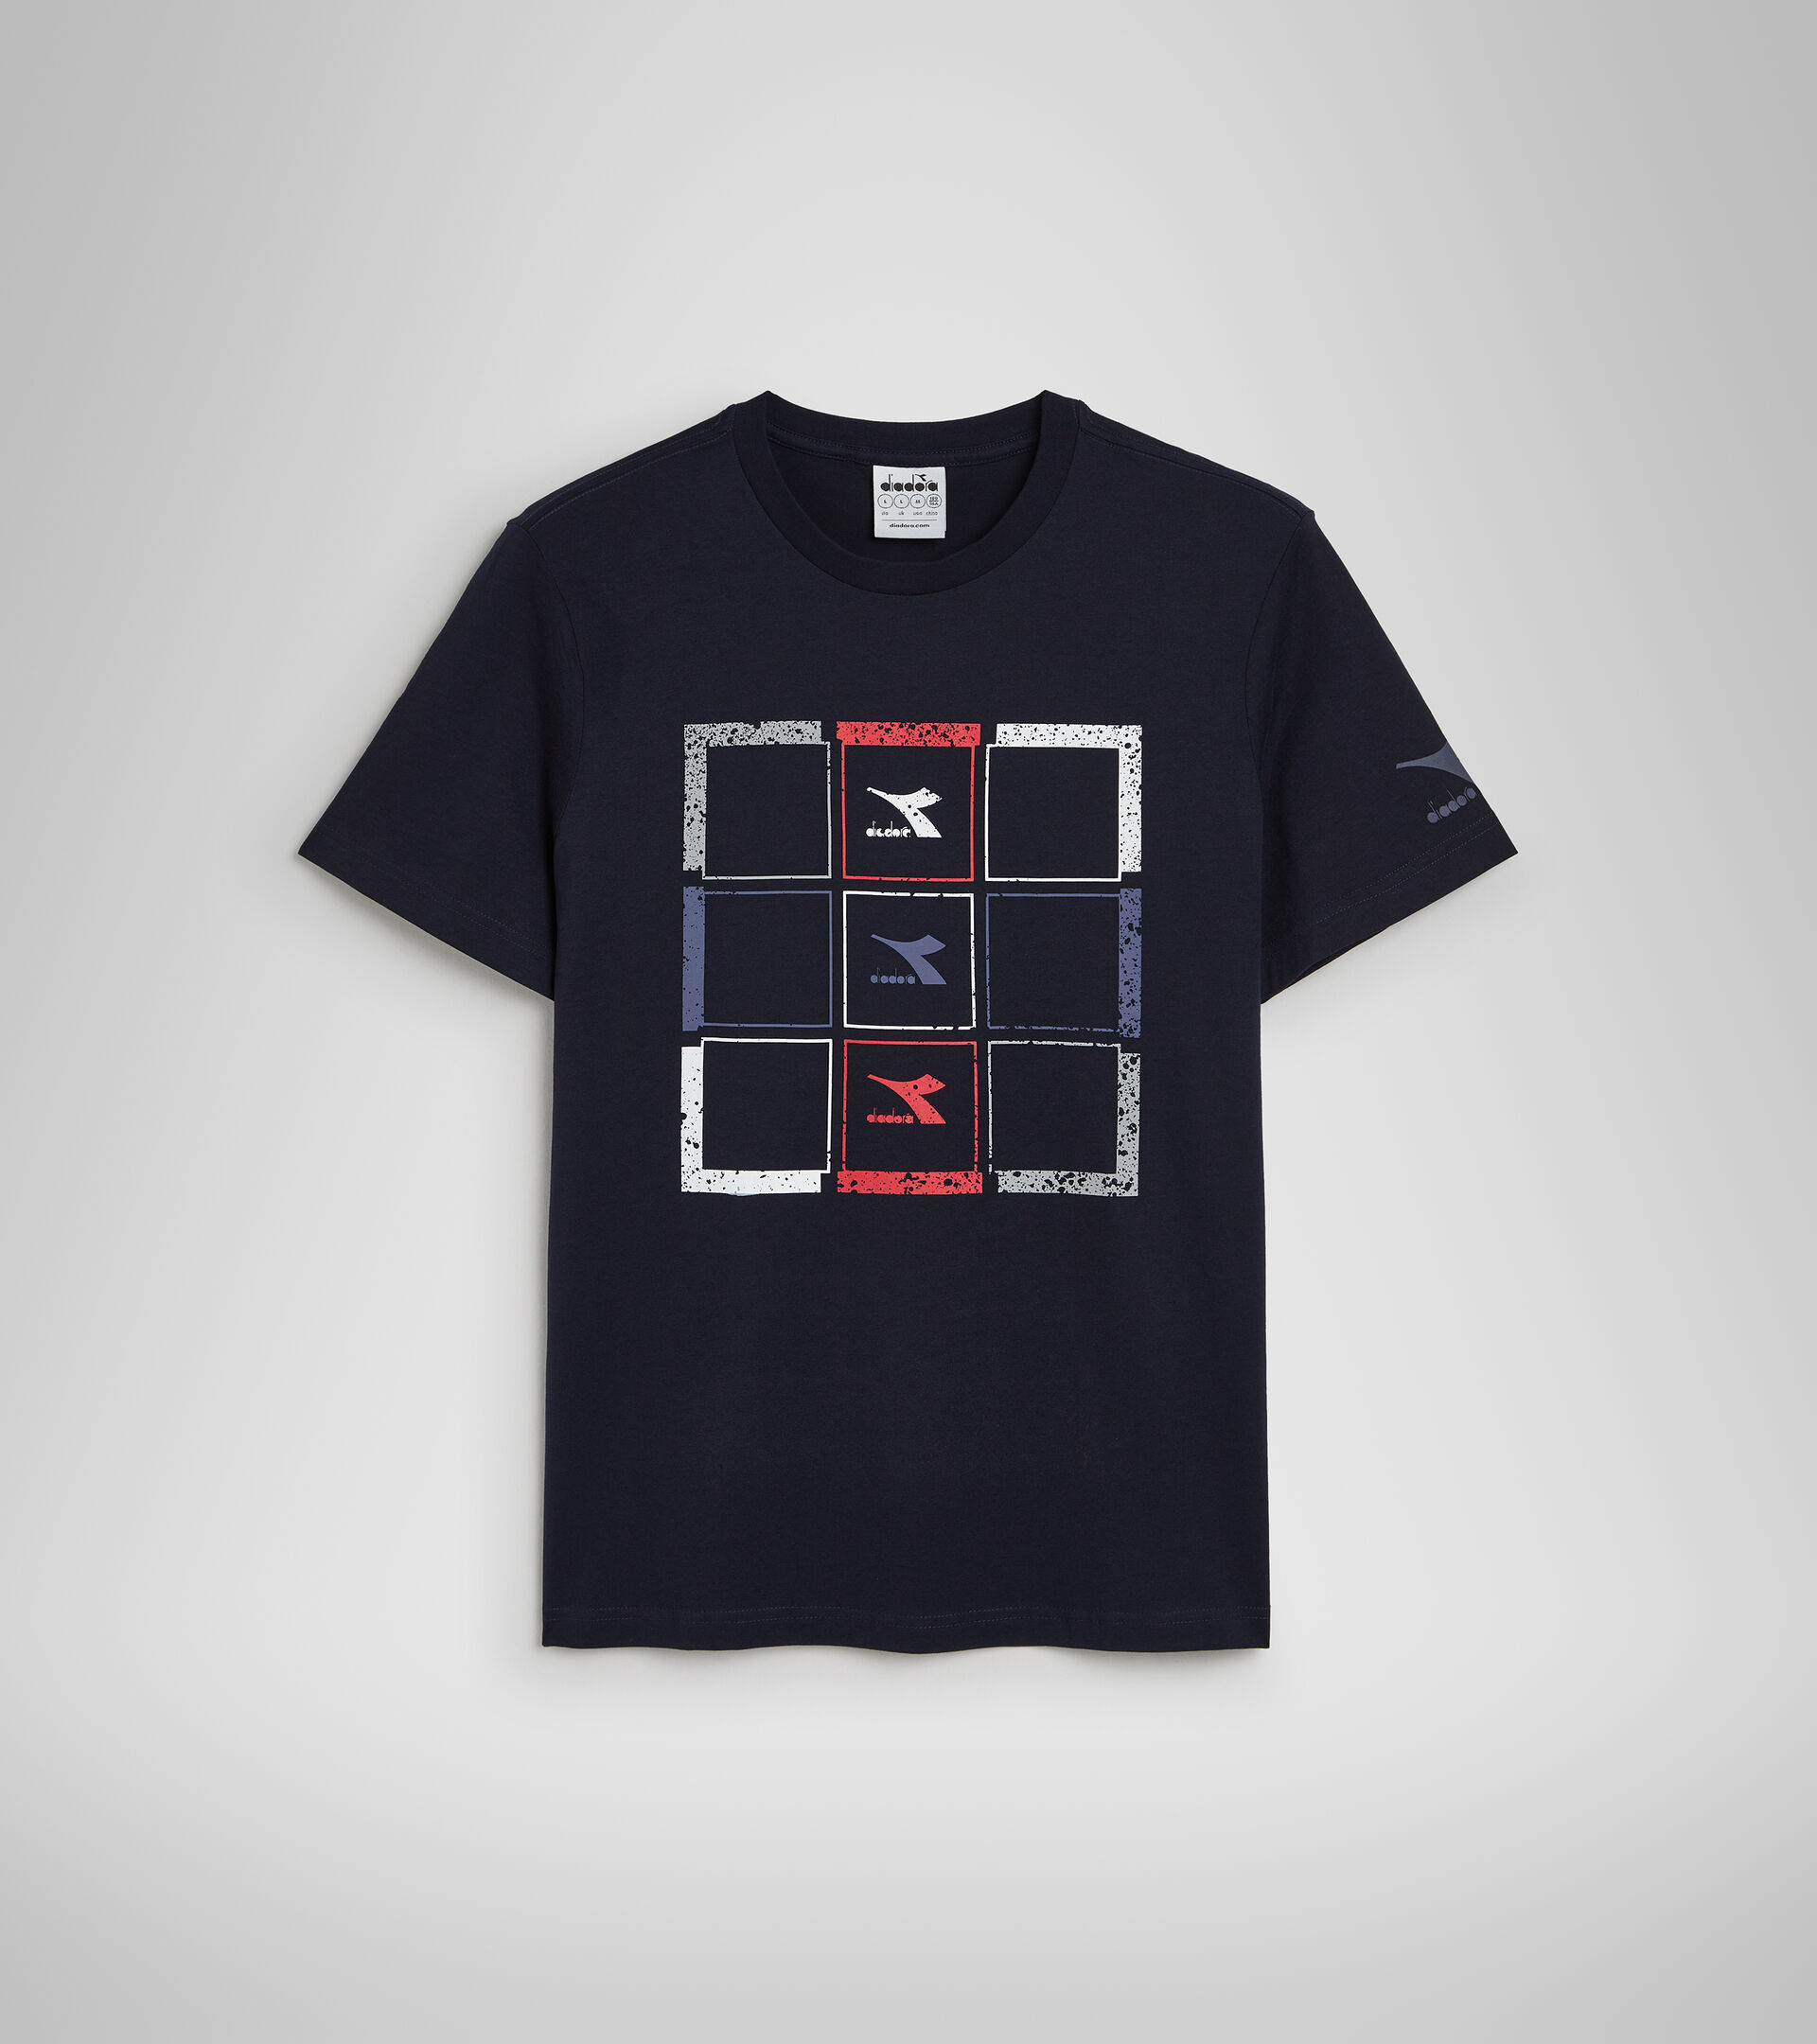 Cotton T-shirt - Men T-SHIRT SS TWIST CLASSIC NAVY - Diadora